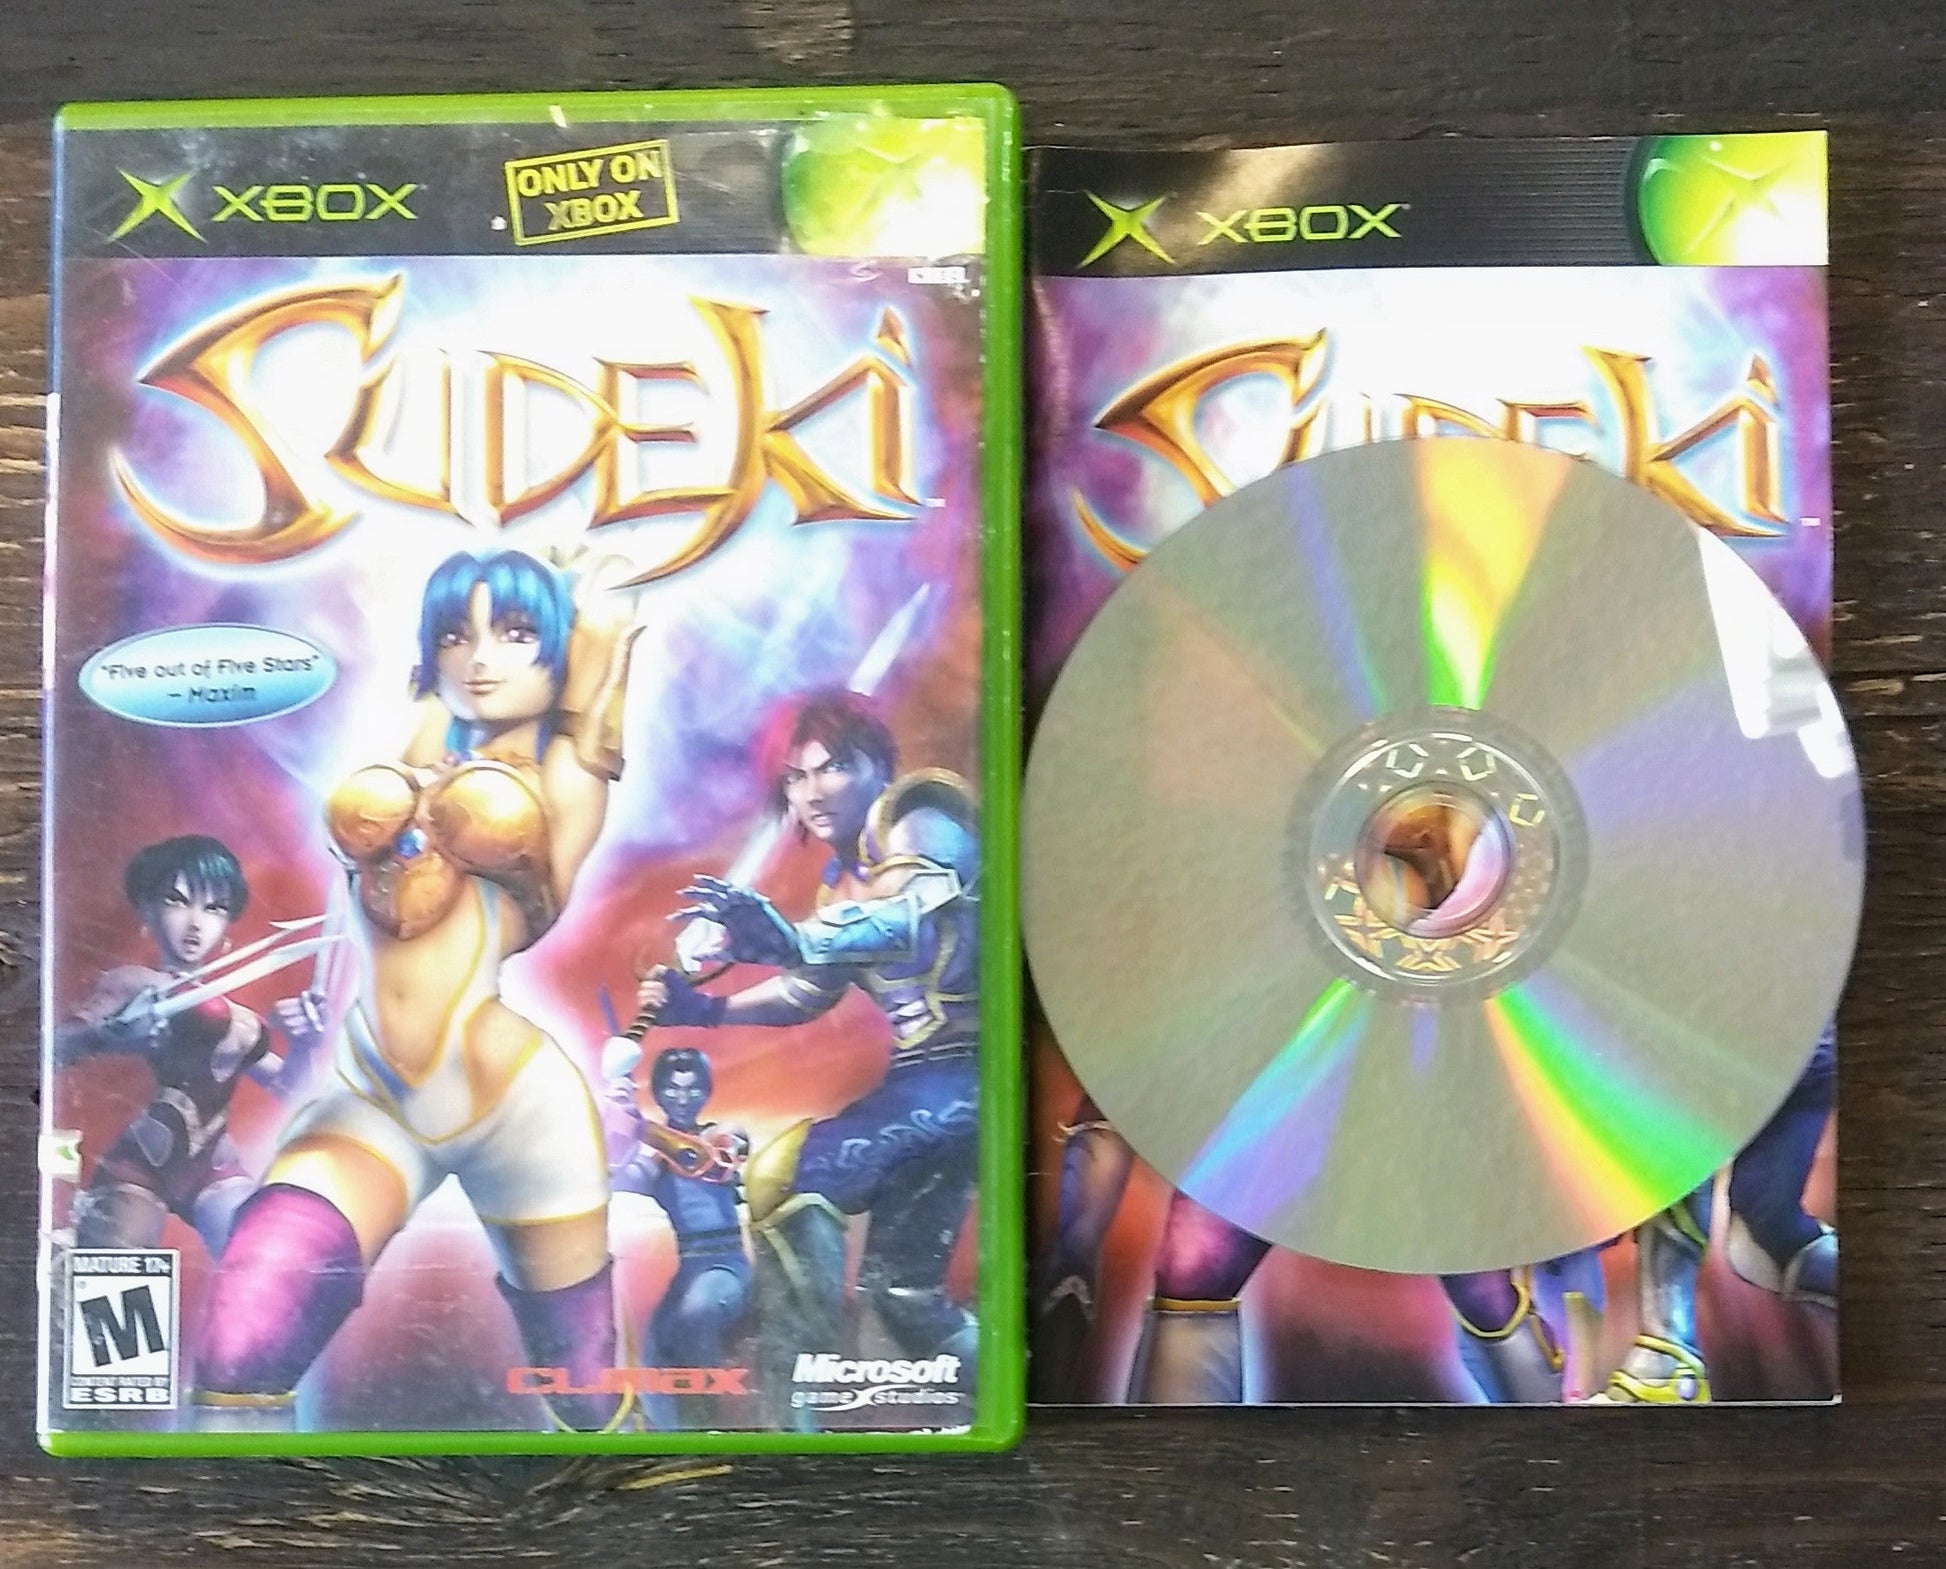 SUDEKI (XBOX) - jeux video game-x